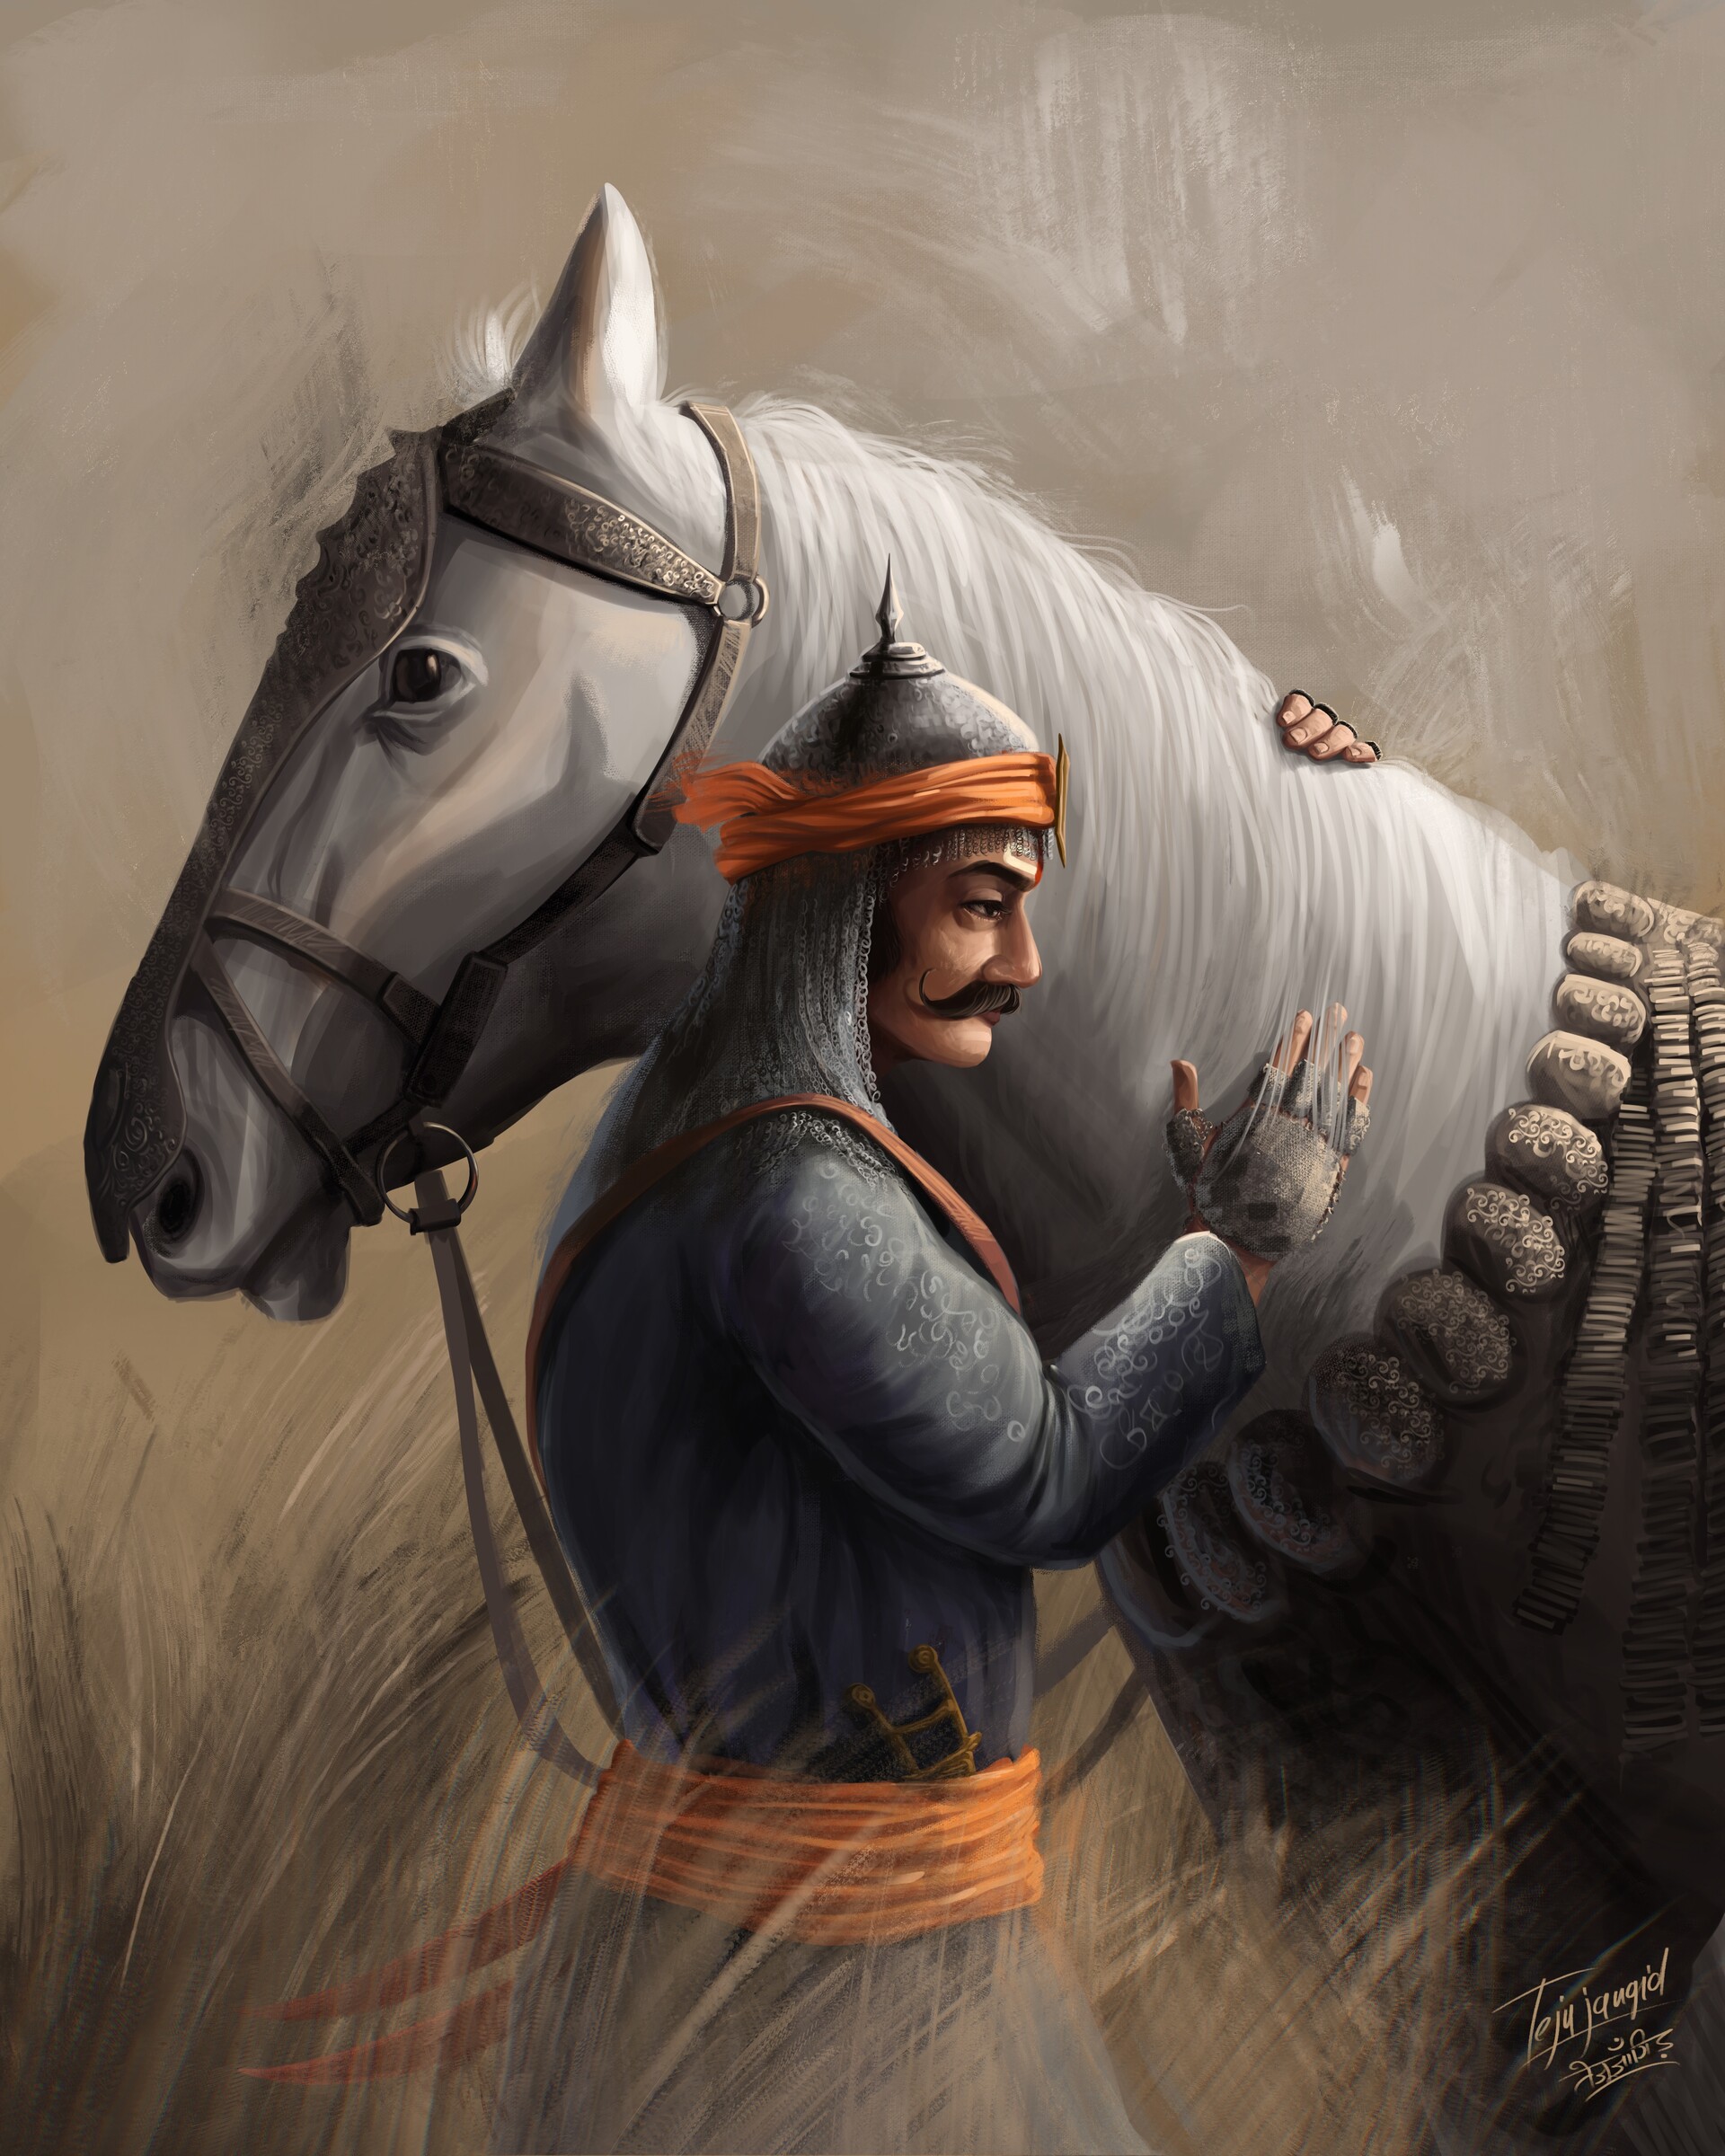 Maharana Pratap with his extraordinary horse Chetak